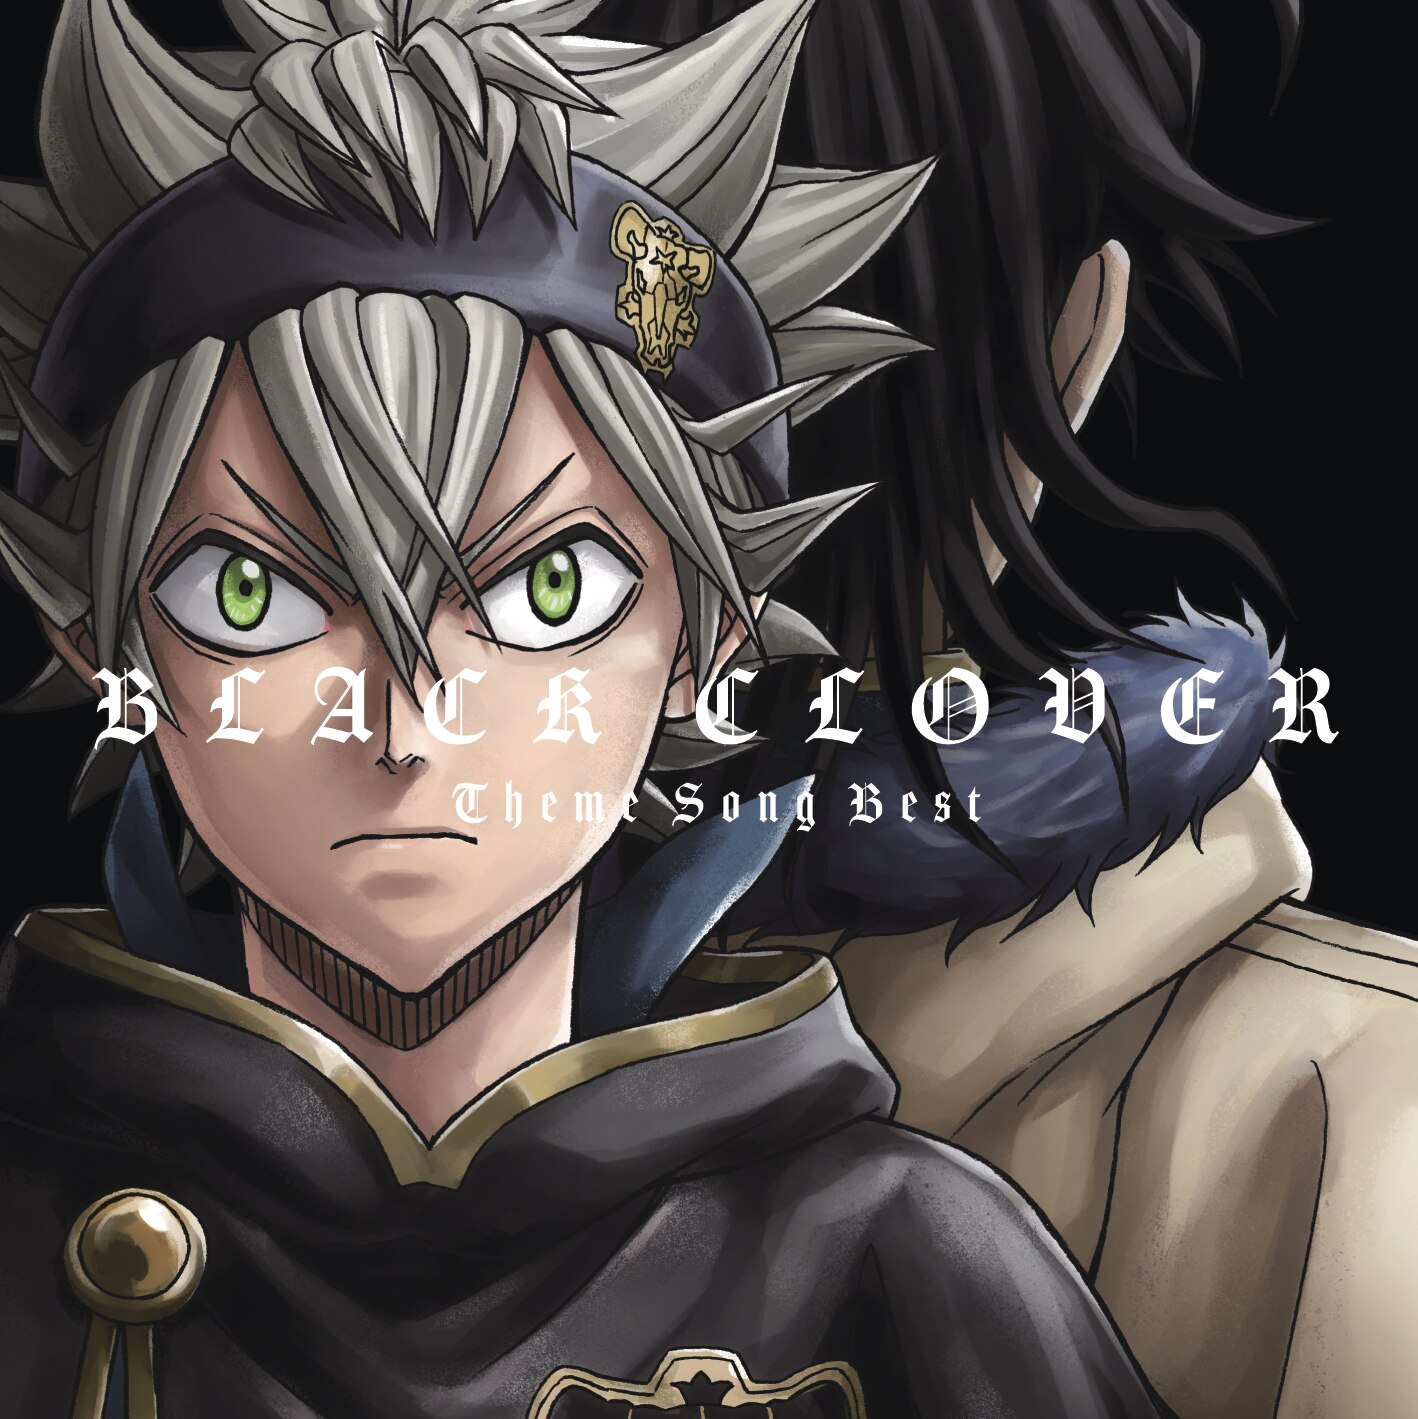 Black Catcher, Black Clover Wiki